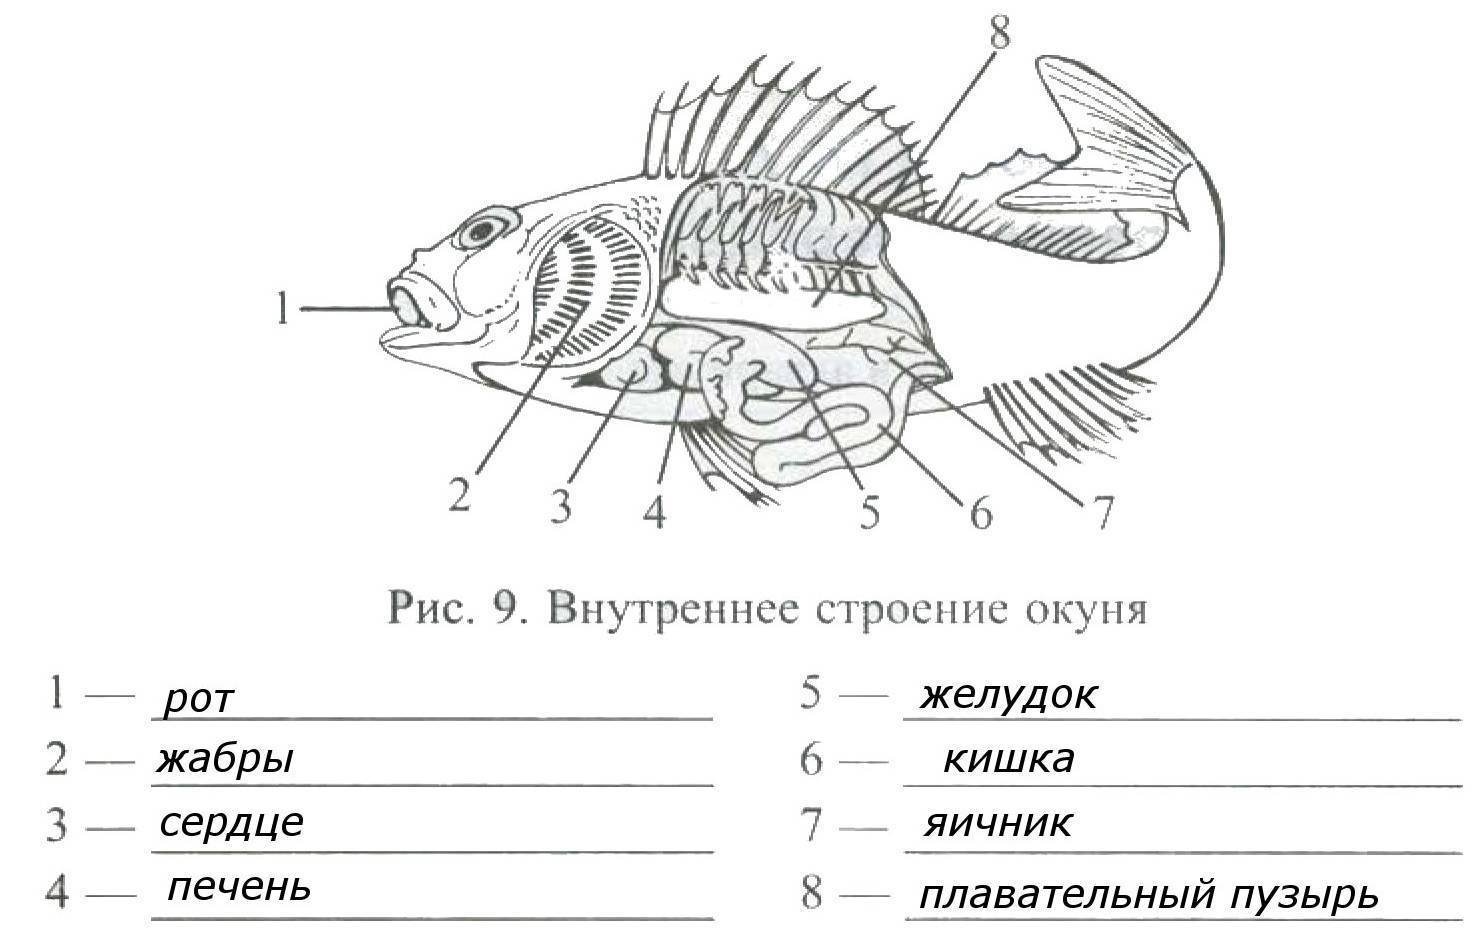 Контрольная по теме рыбы 7 класс. Внутренне строение речного окуня. Внутреннее строение окуня биология 7 класс. Внешнее и внутреннее строение рыбы 7 класс биология. Внутреннее строение окуня биология 7 класс рисунок.